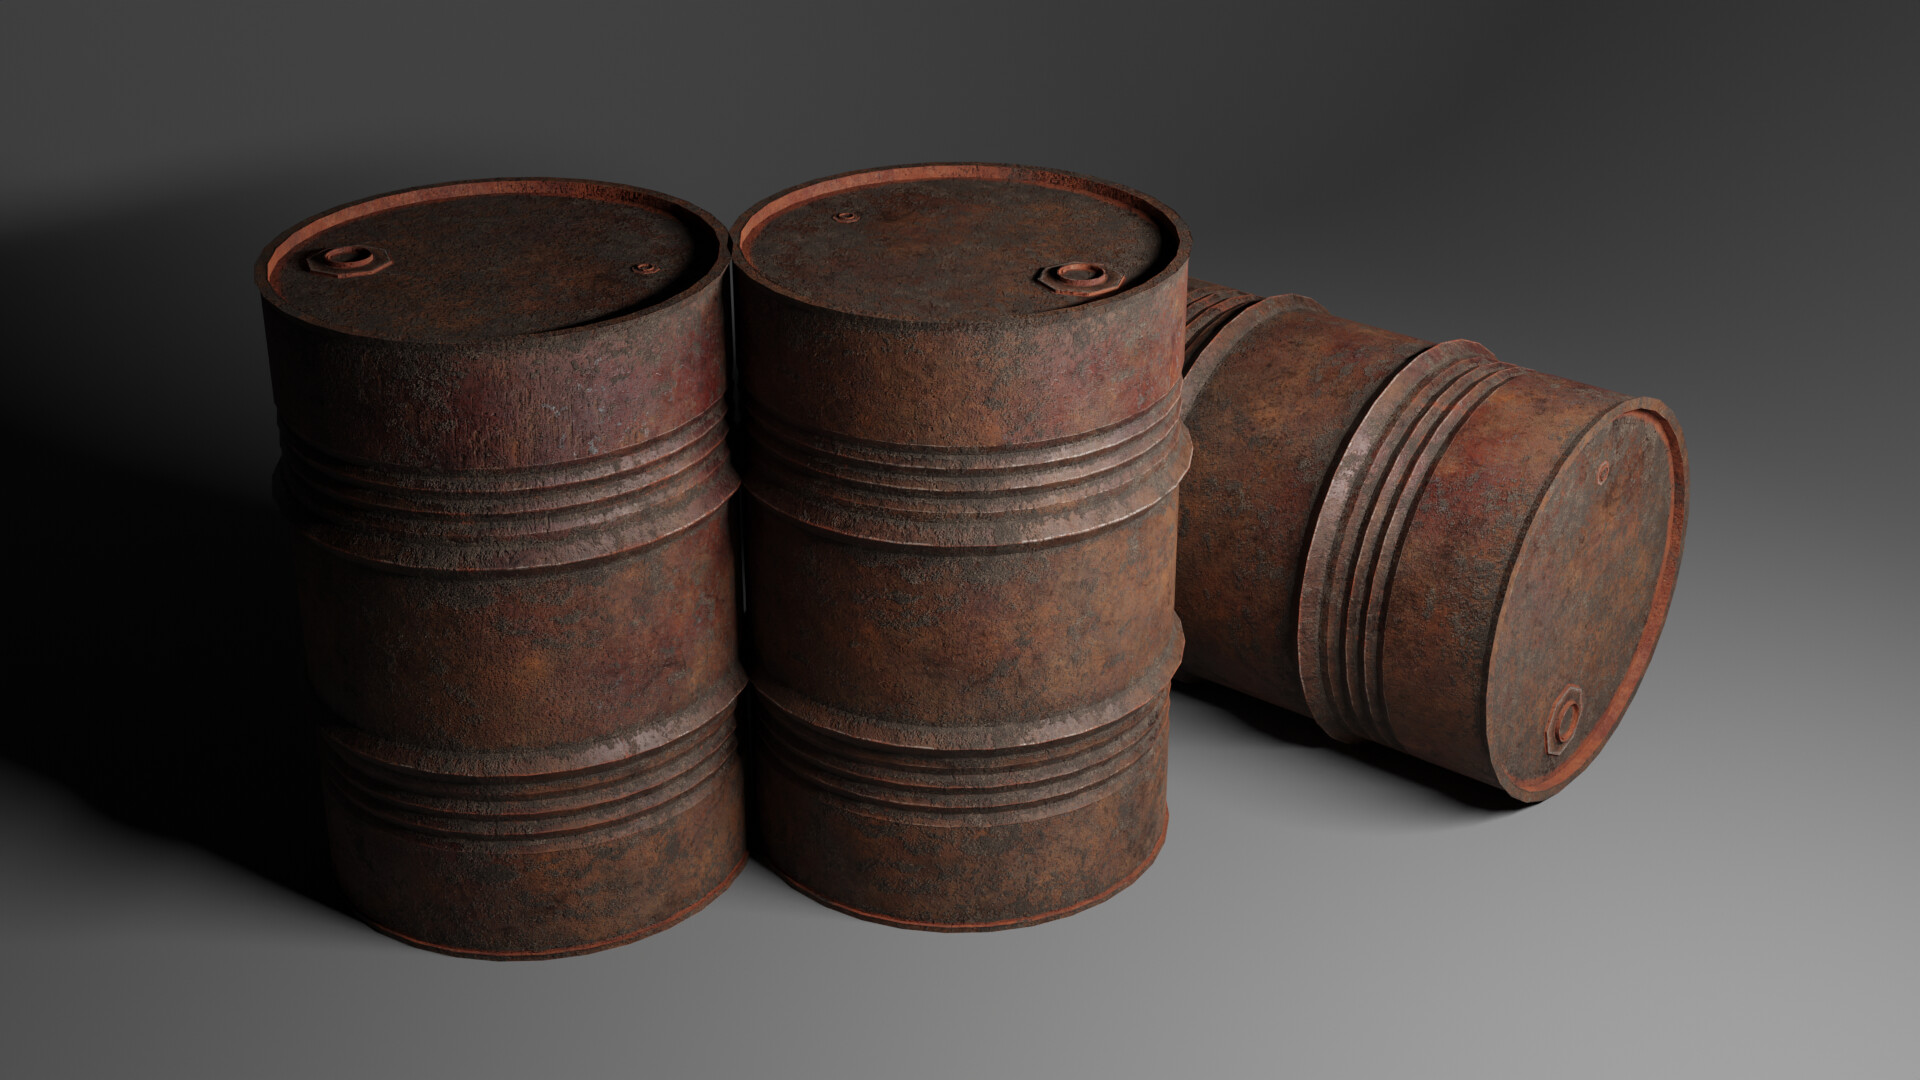 Instant barrel rust